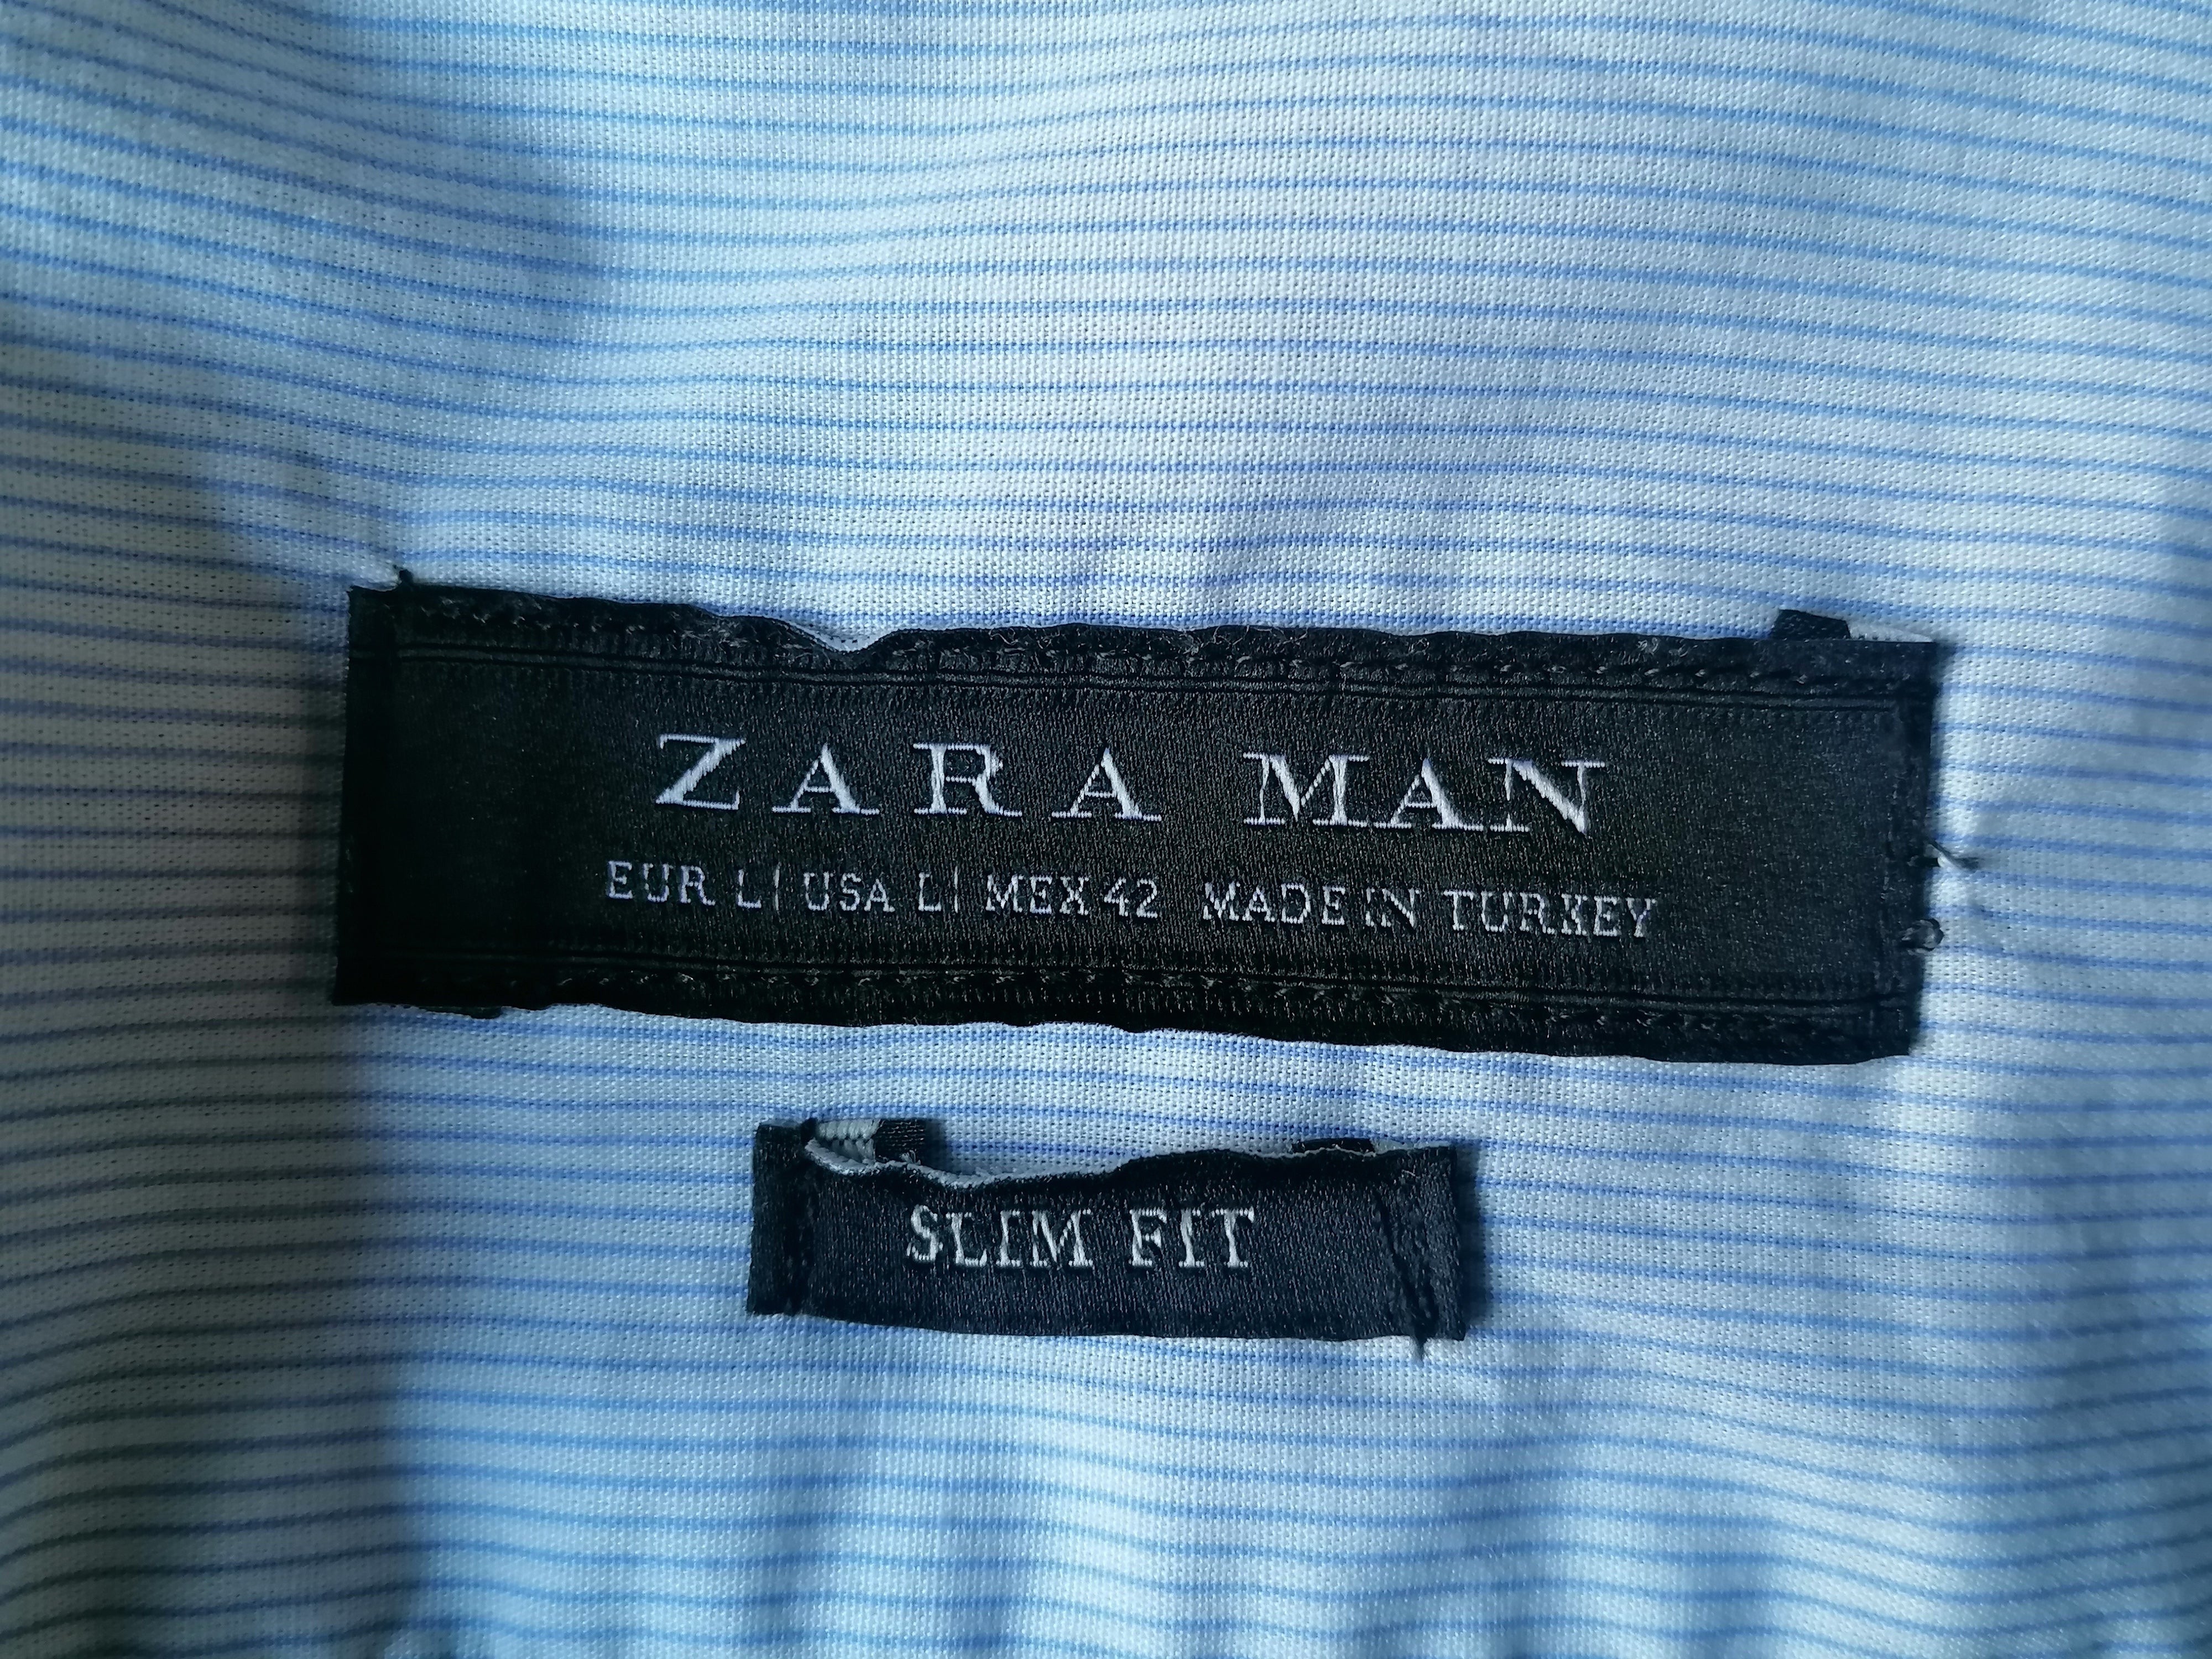 Camisa de Zara Man. Azul oscuro con rojo y blanco. Tamaño L. Fit Slim. EcoGents